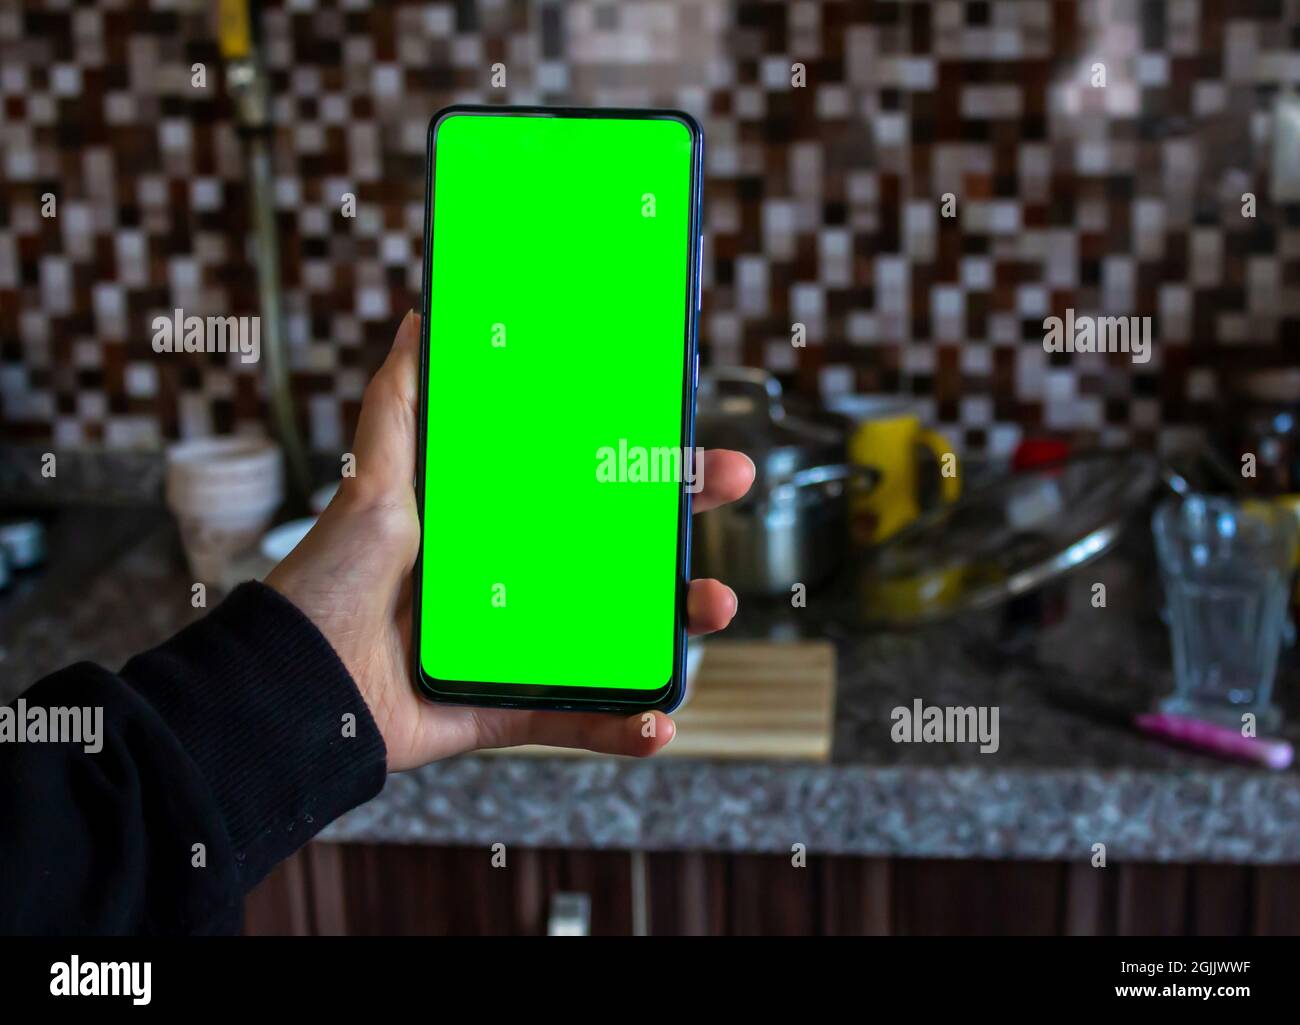 Frau Hand hält grünen Bildschirm Handy in der Küche. Verschwommenes ungewaschene Geschirr im Hintergrund. Mockup-Bild, Kopierbereich. Stockfoto